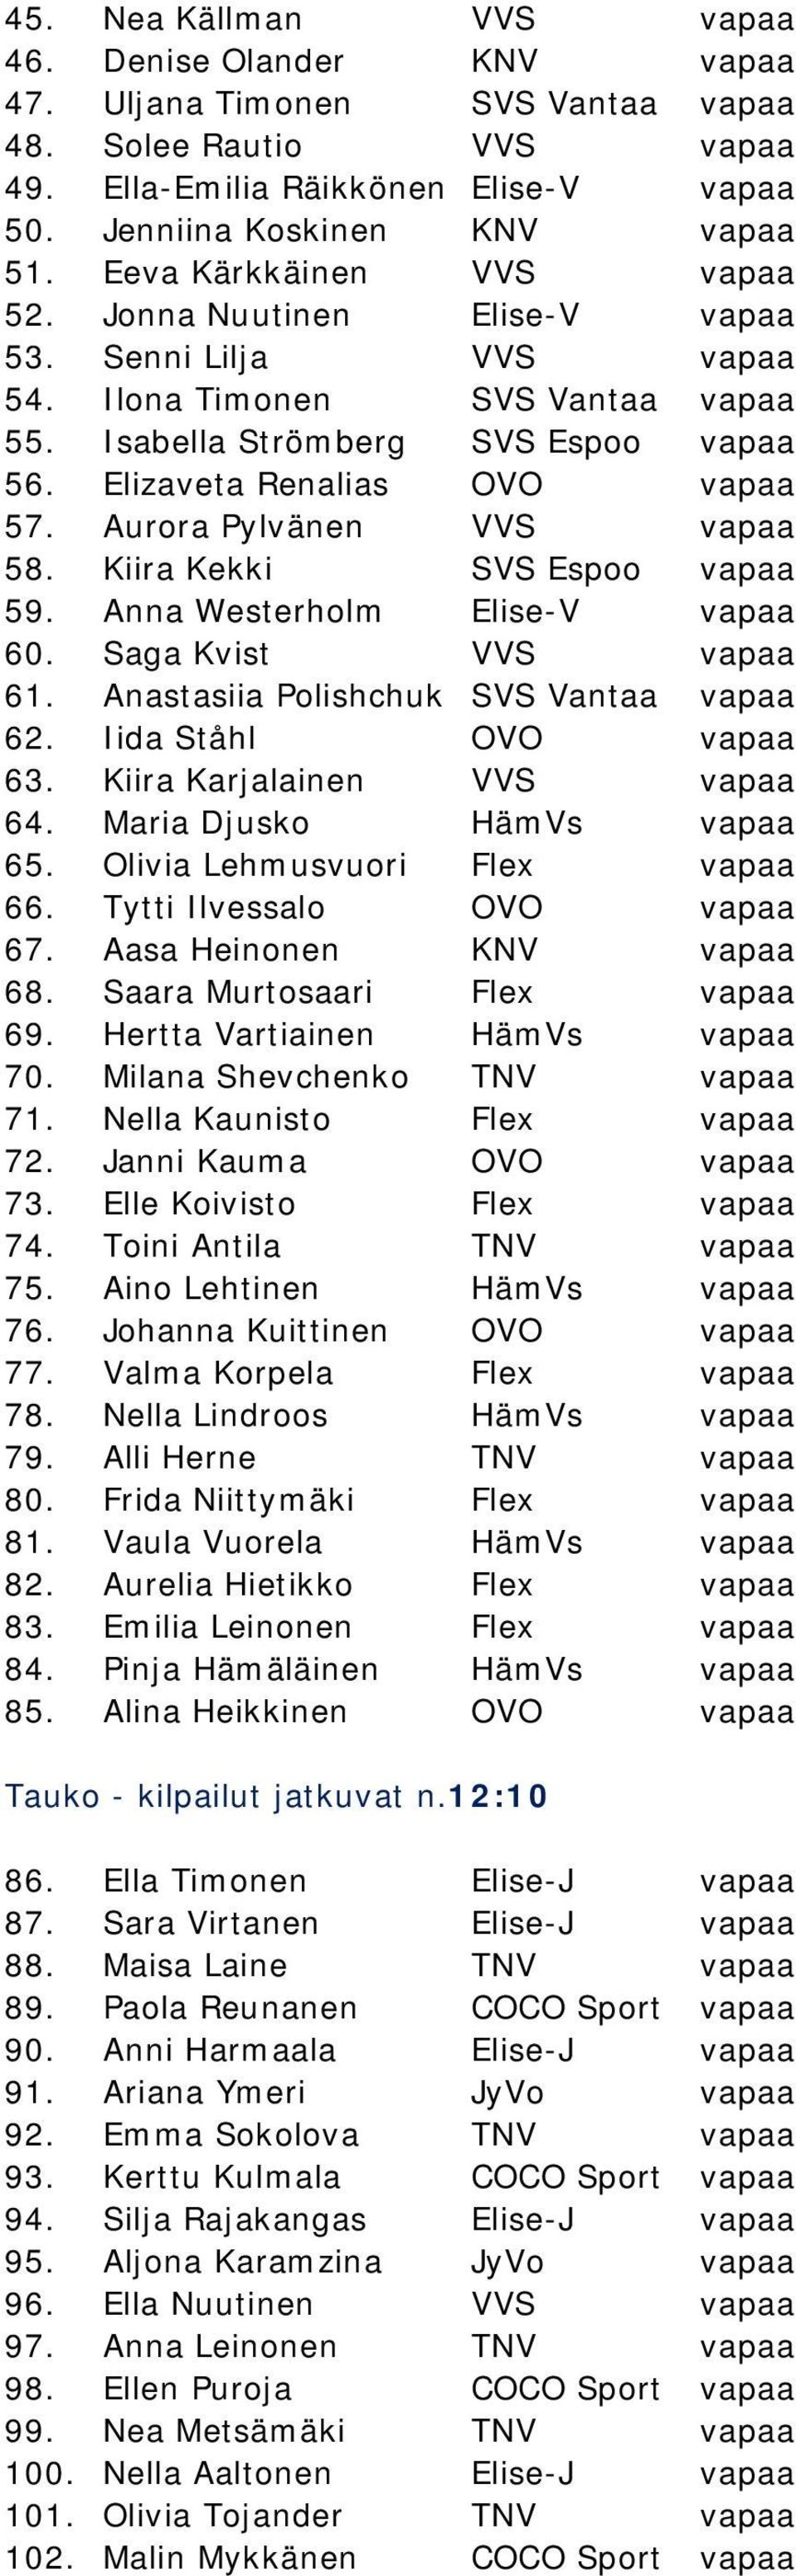 Aurora Pylvänen VVS vapaa 58. Kiira Kekki SVS Espoo vapaa 59. Anna Westerholm Elise-V vapaa 60. Saga Kvist VVS vapaa 61. Anastasiia Polishchuk SVS Vantaa vapaa 62. Iida Ståhl OVO vapaa 63.